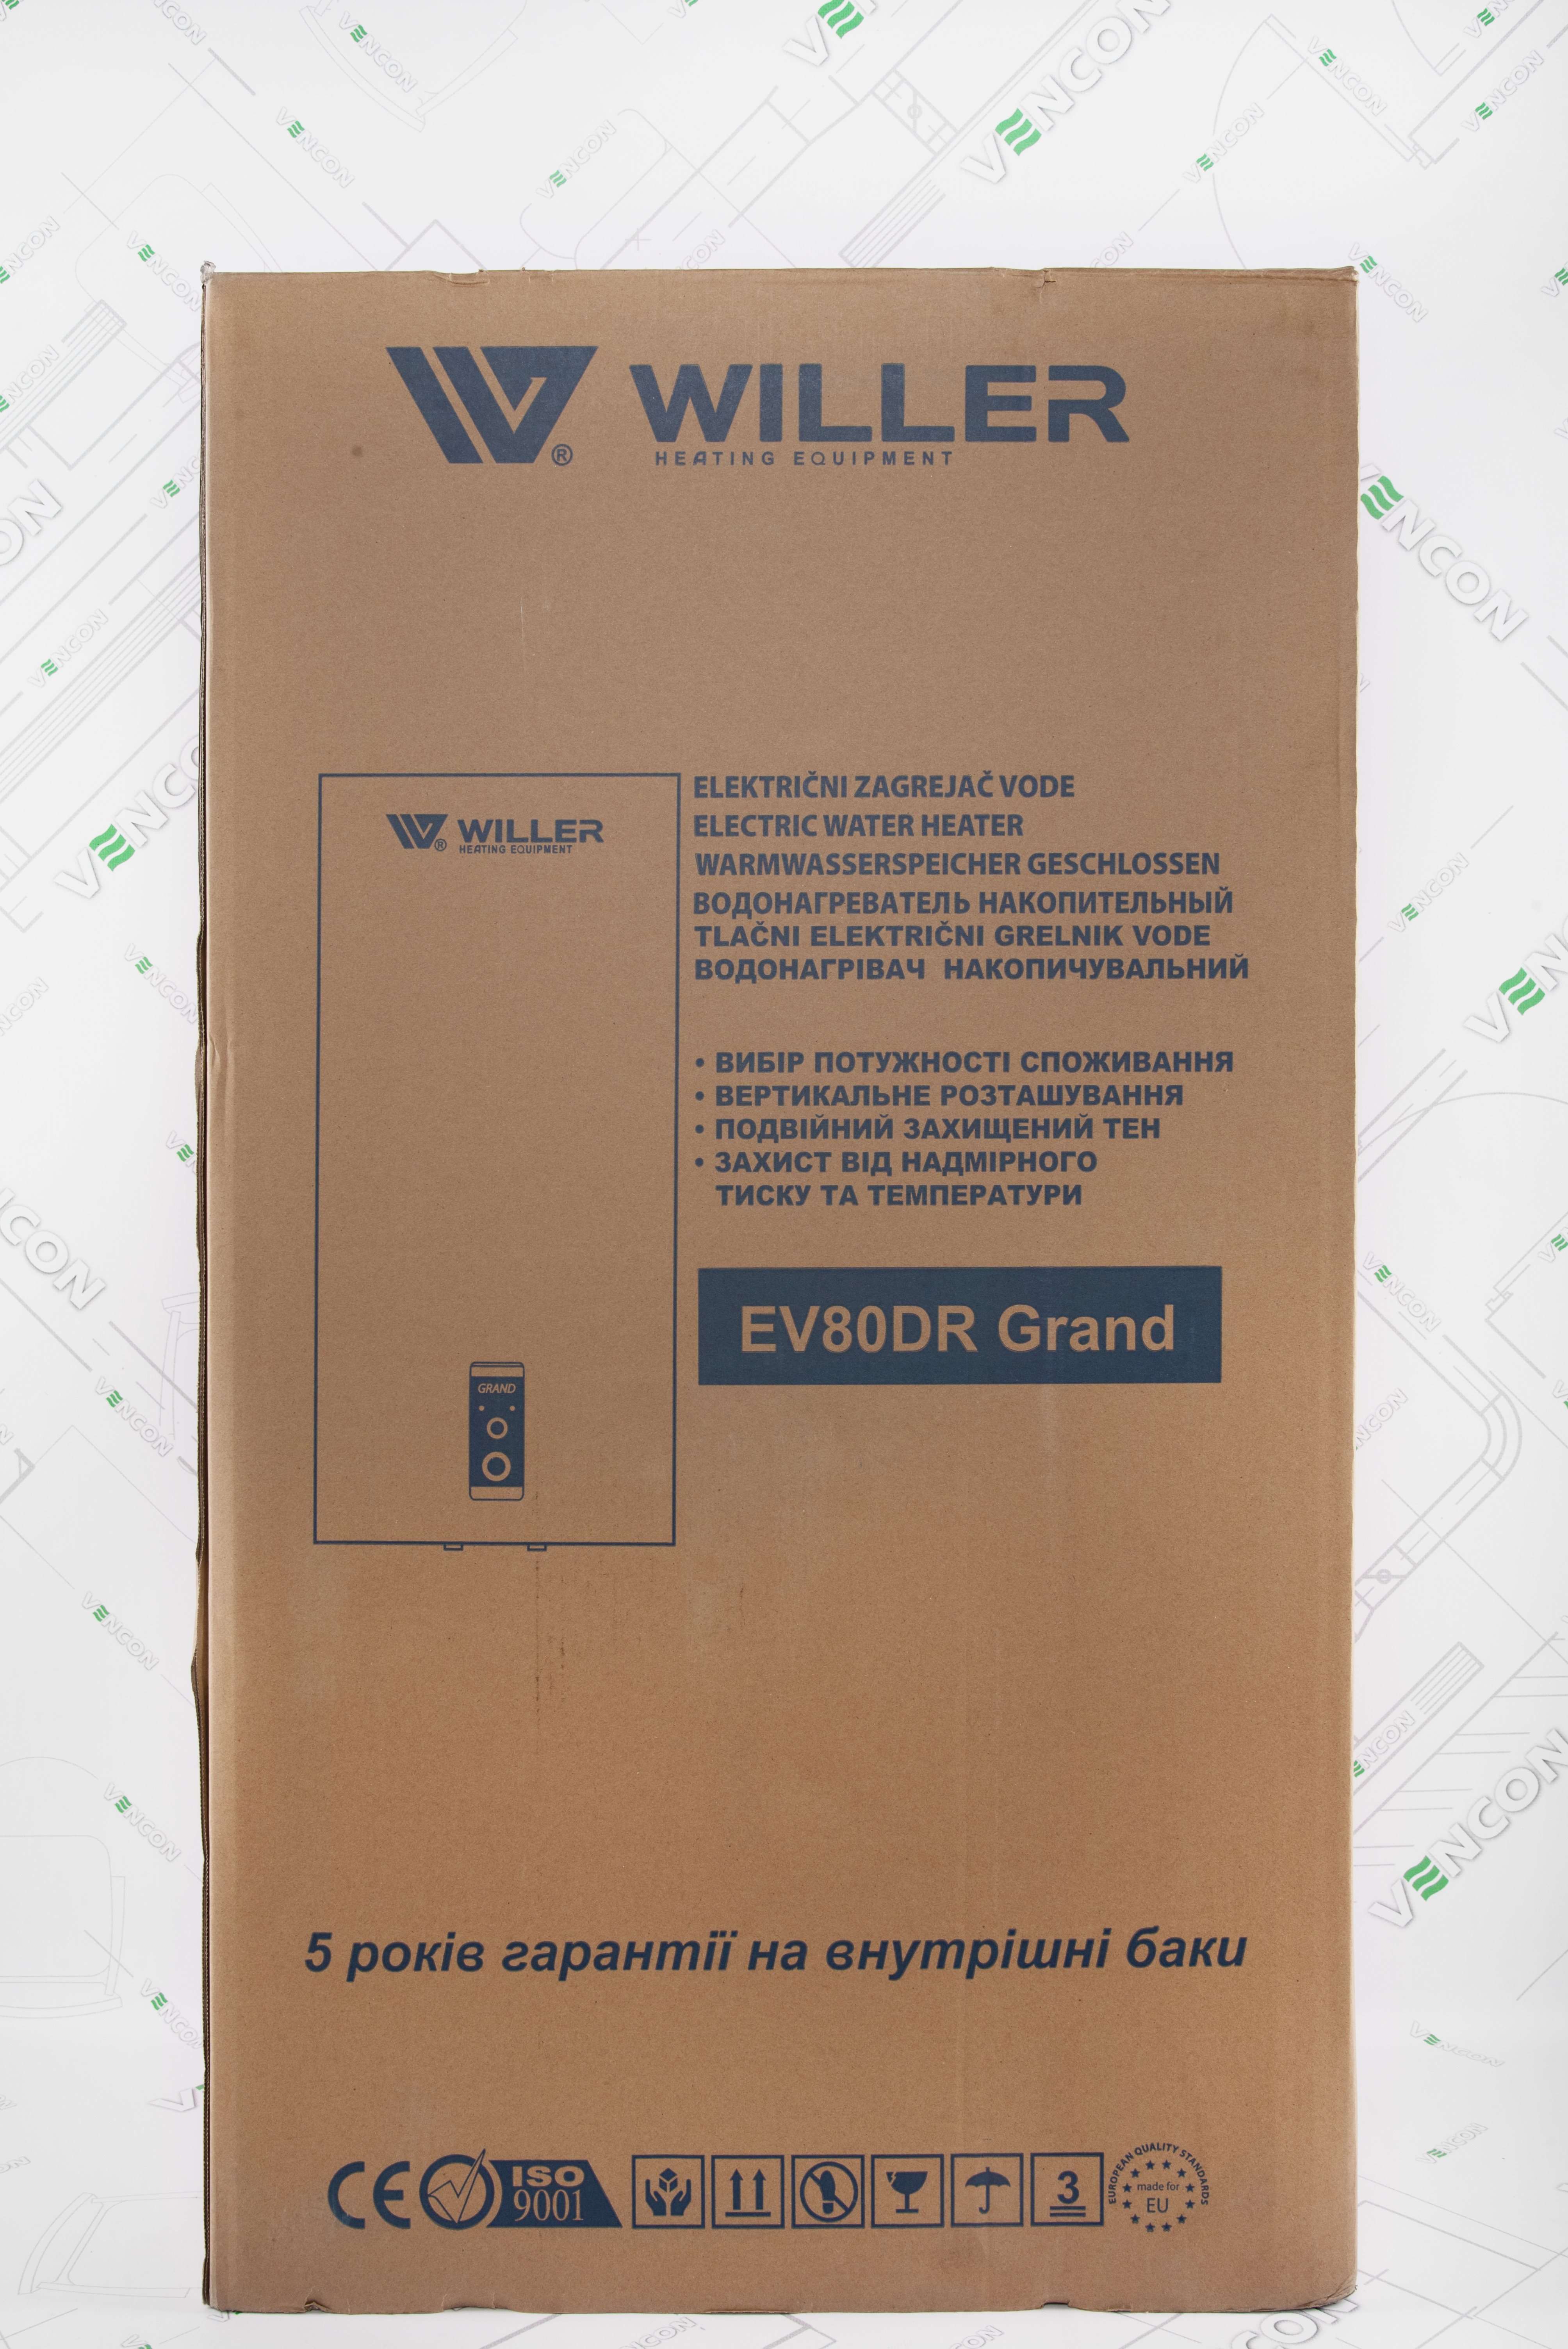 Willer Grand EV80DR на сайте - фото 20